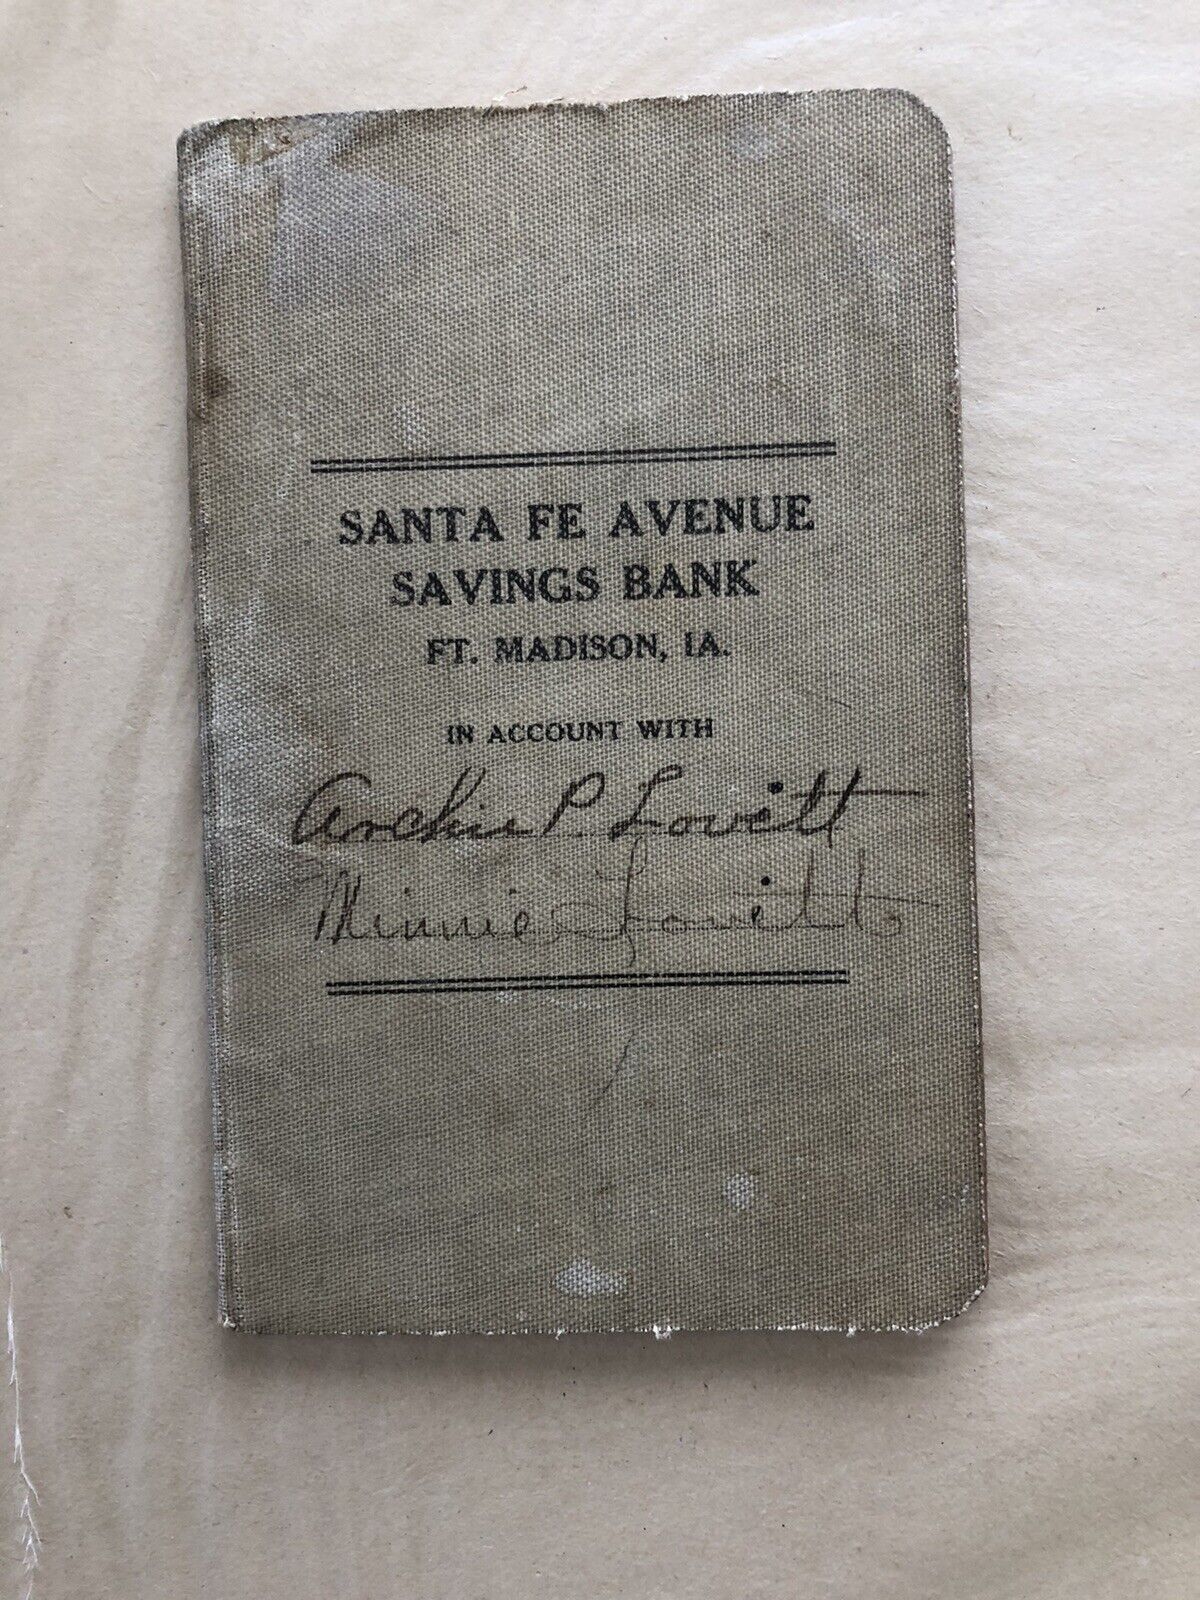 Vintage Bank Book Santa Fe Avenue Savings Bank 1920’s